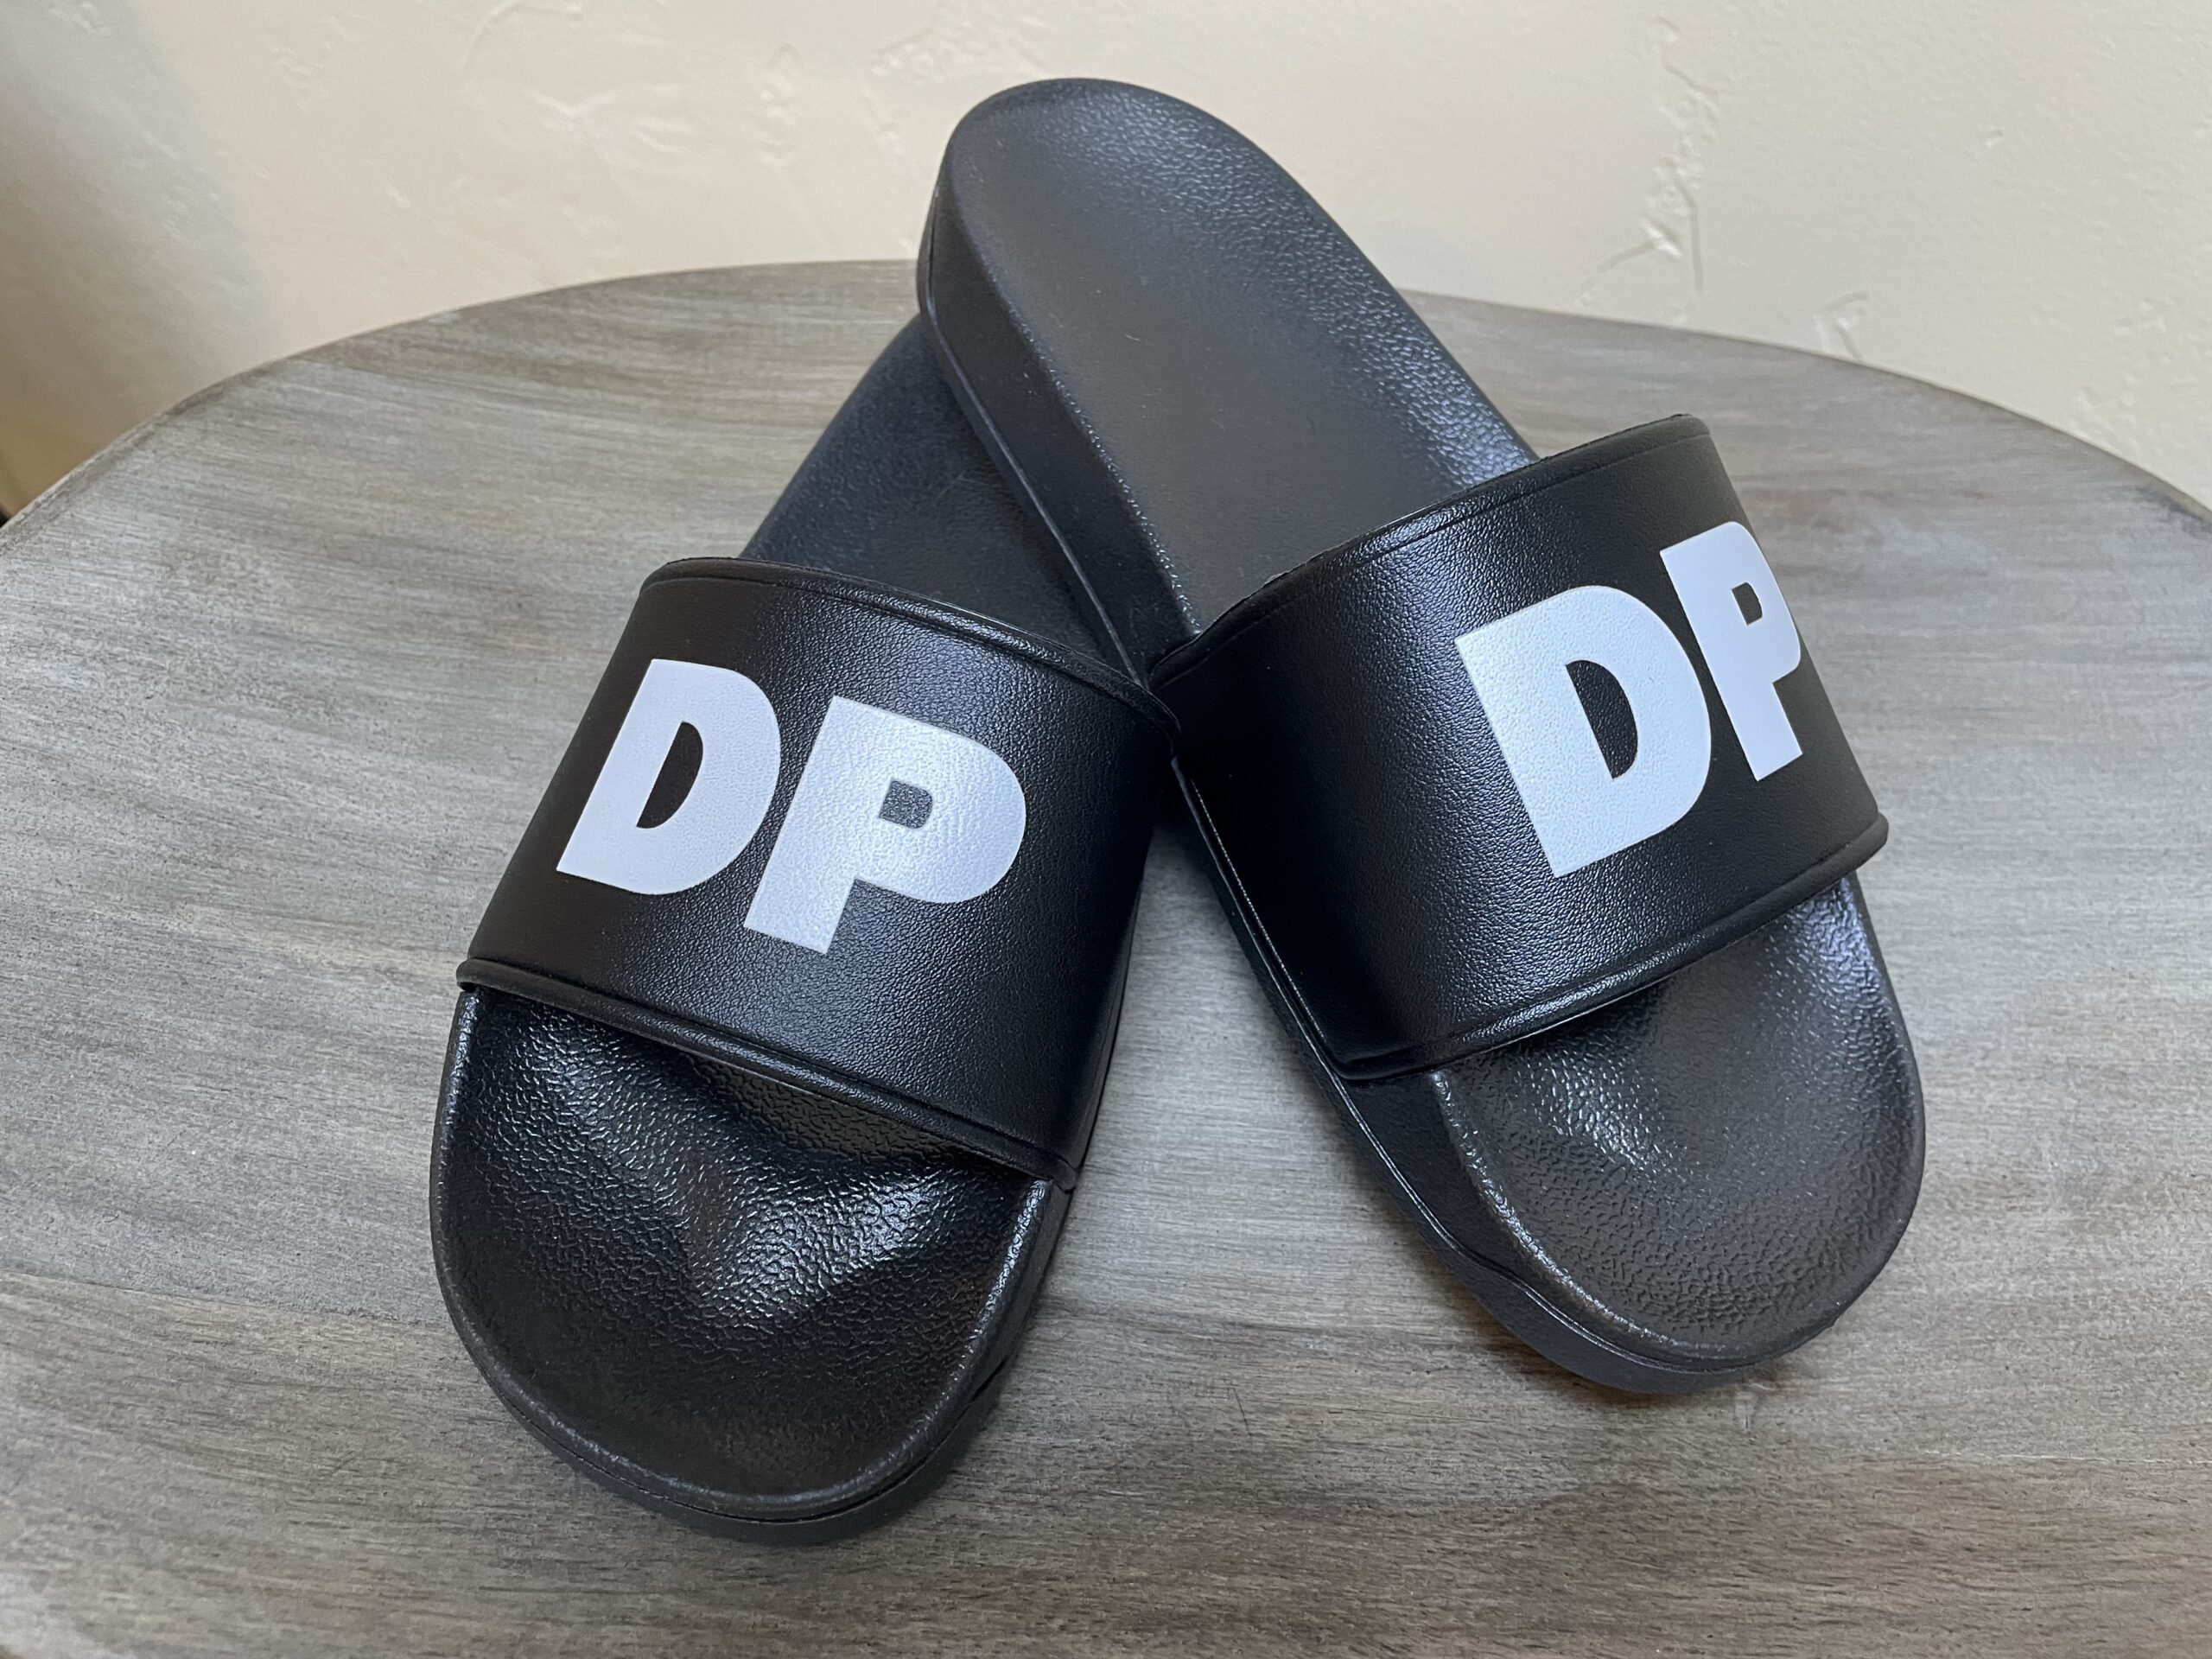 DP Slides – The Bling Lab OC